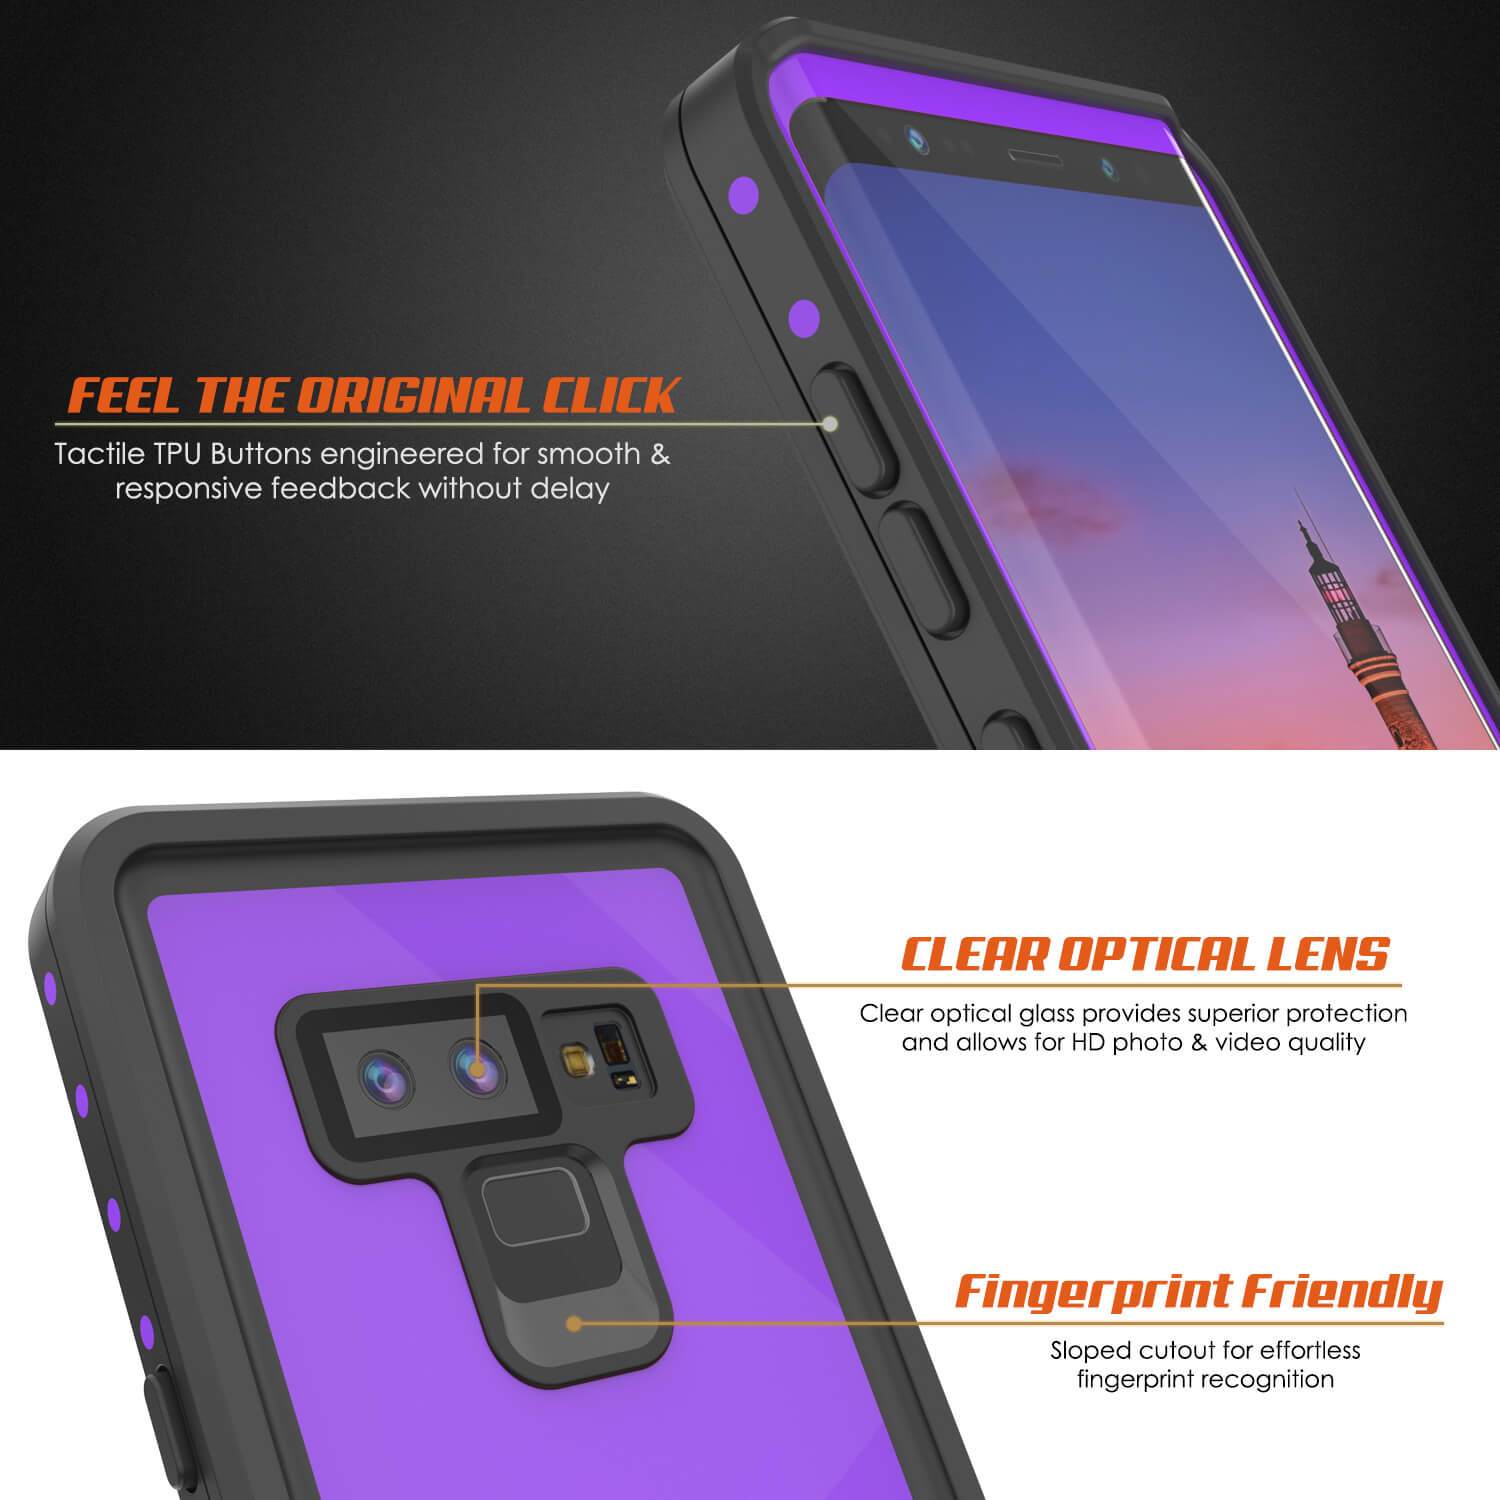 Galaxy Note 9 Waterproof Case PunkCase StudStar [Purple] Thin 6.6ft